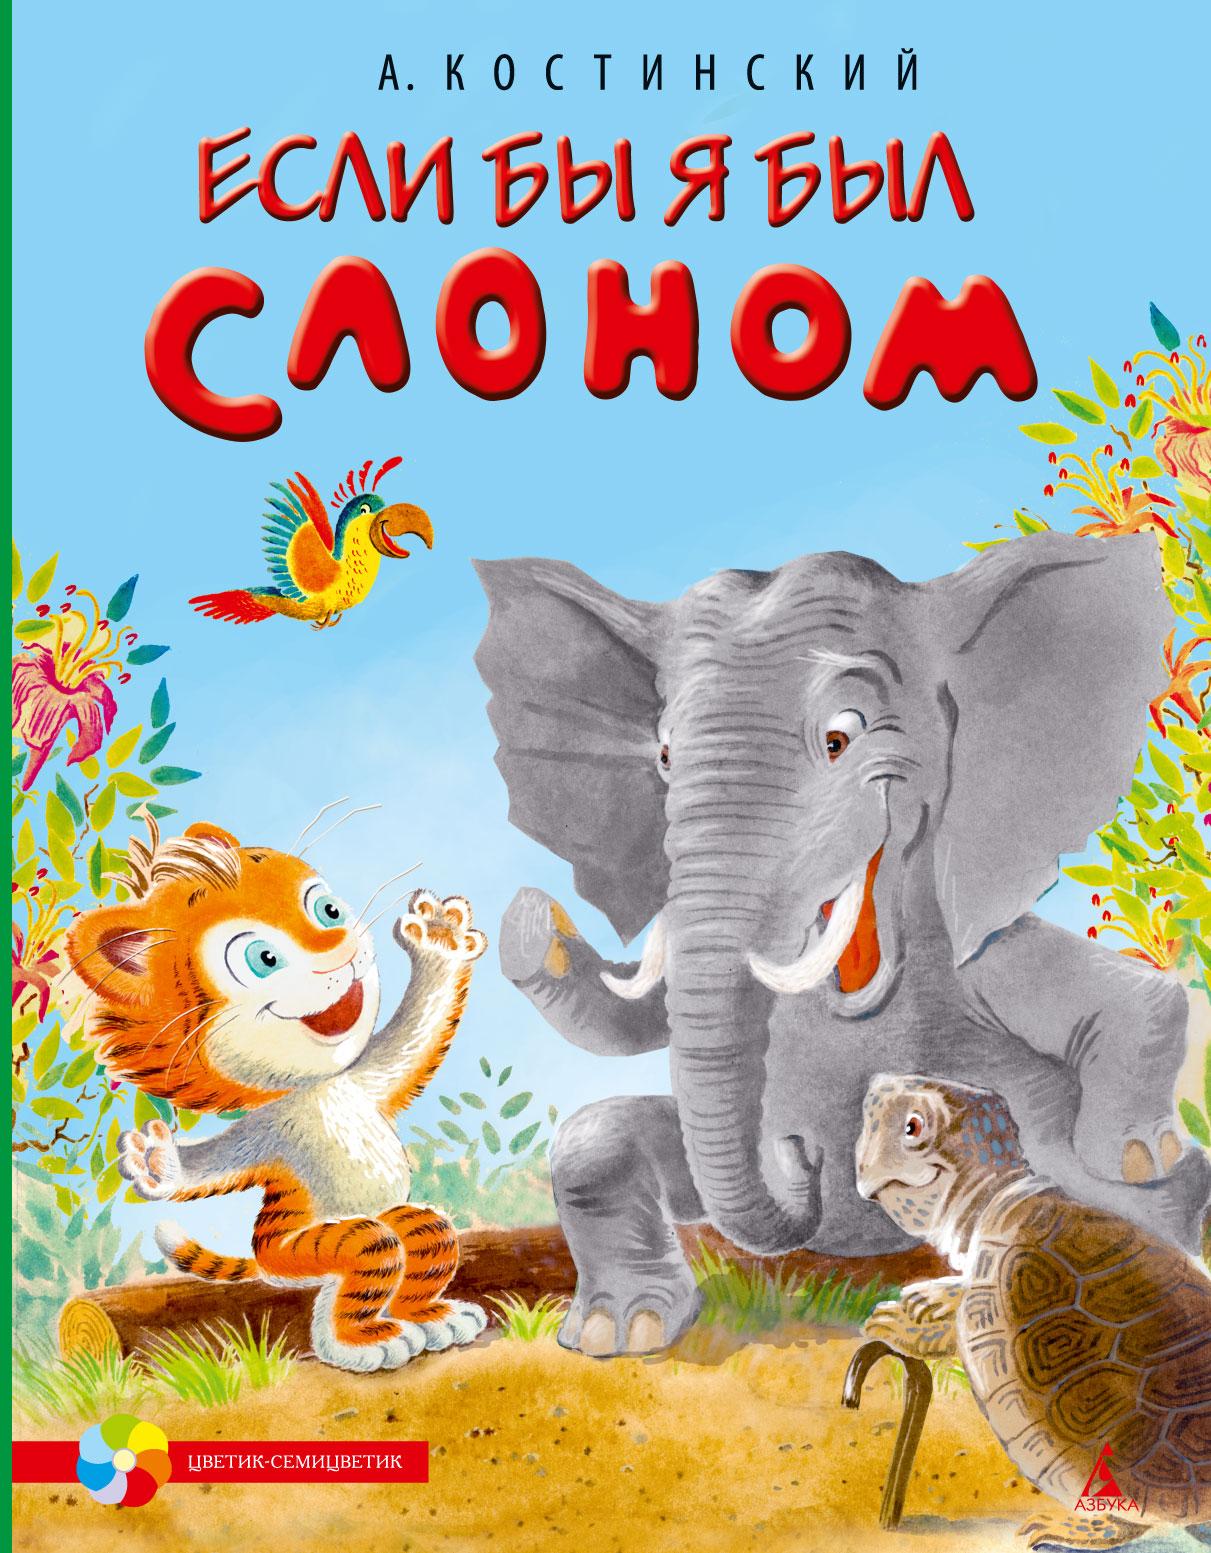 Книга слоновые. Книги о слонах. Книги про слонов. Книги про слонов для детей. Слон с книгой.